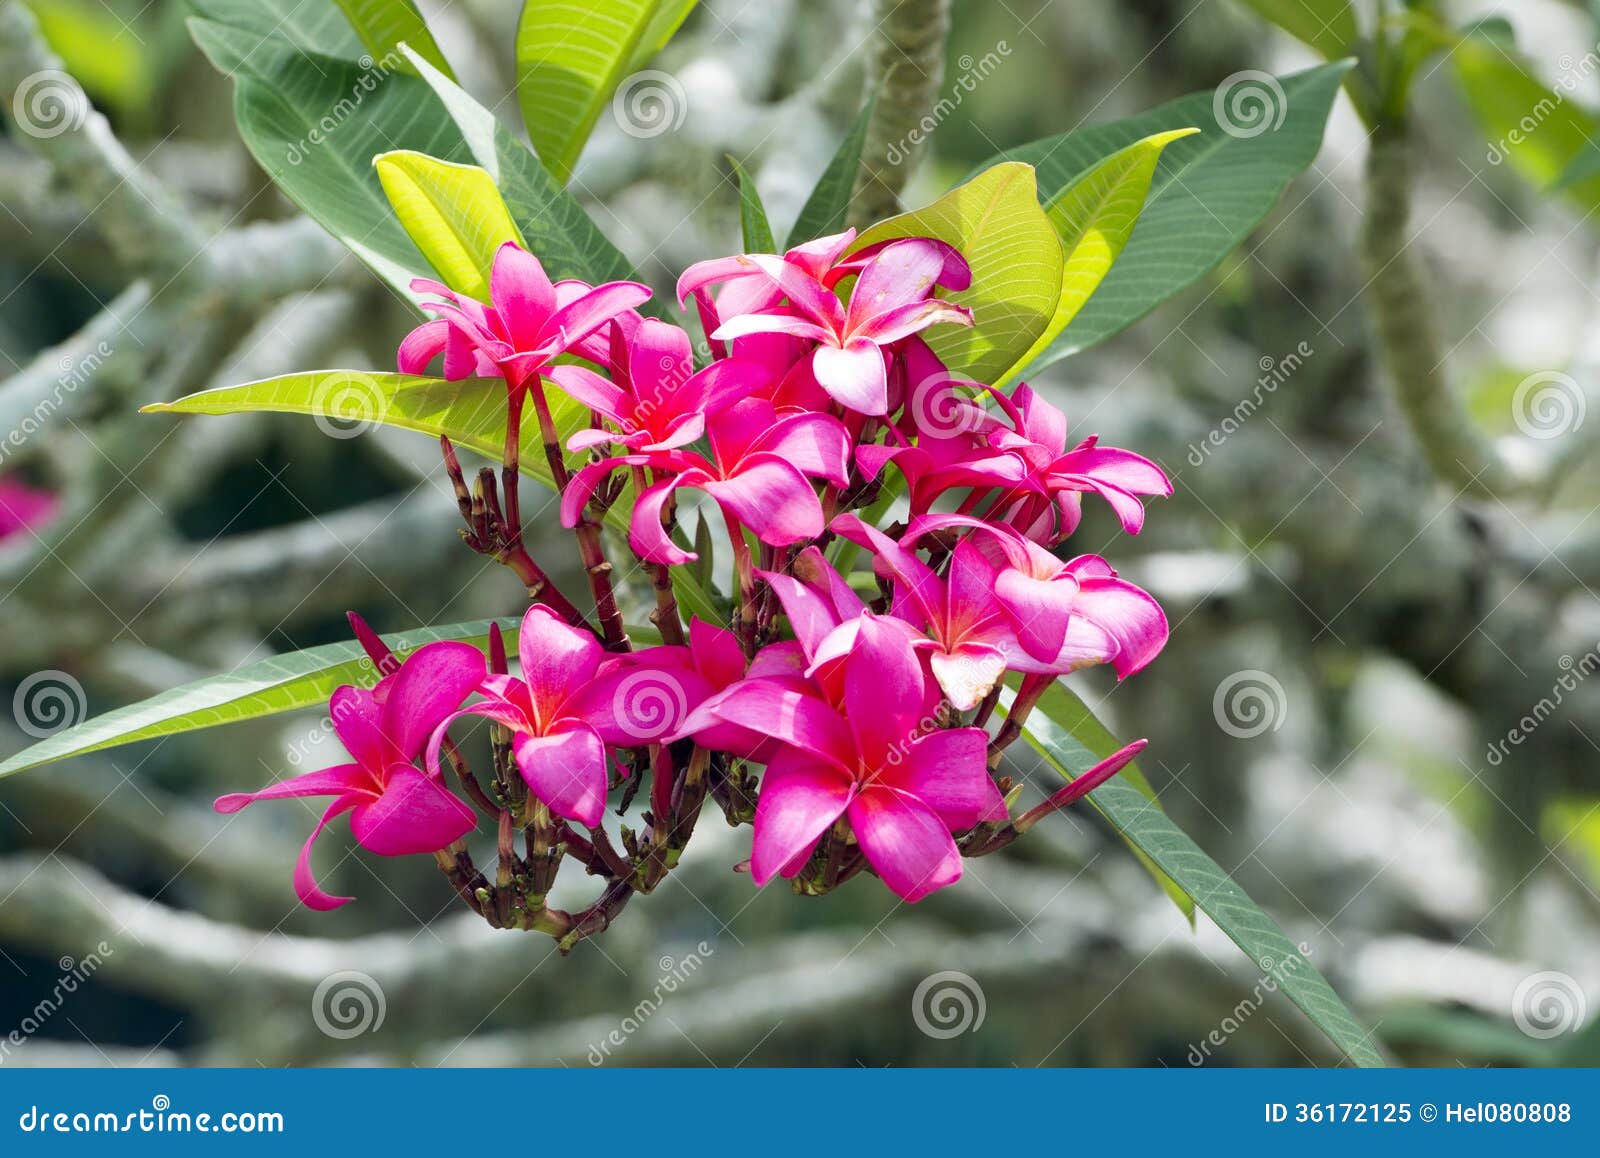 pink frangipani blooms, vibrant blooming frangipani tree